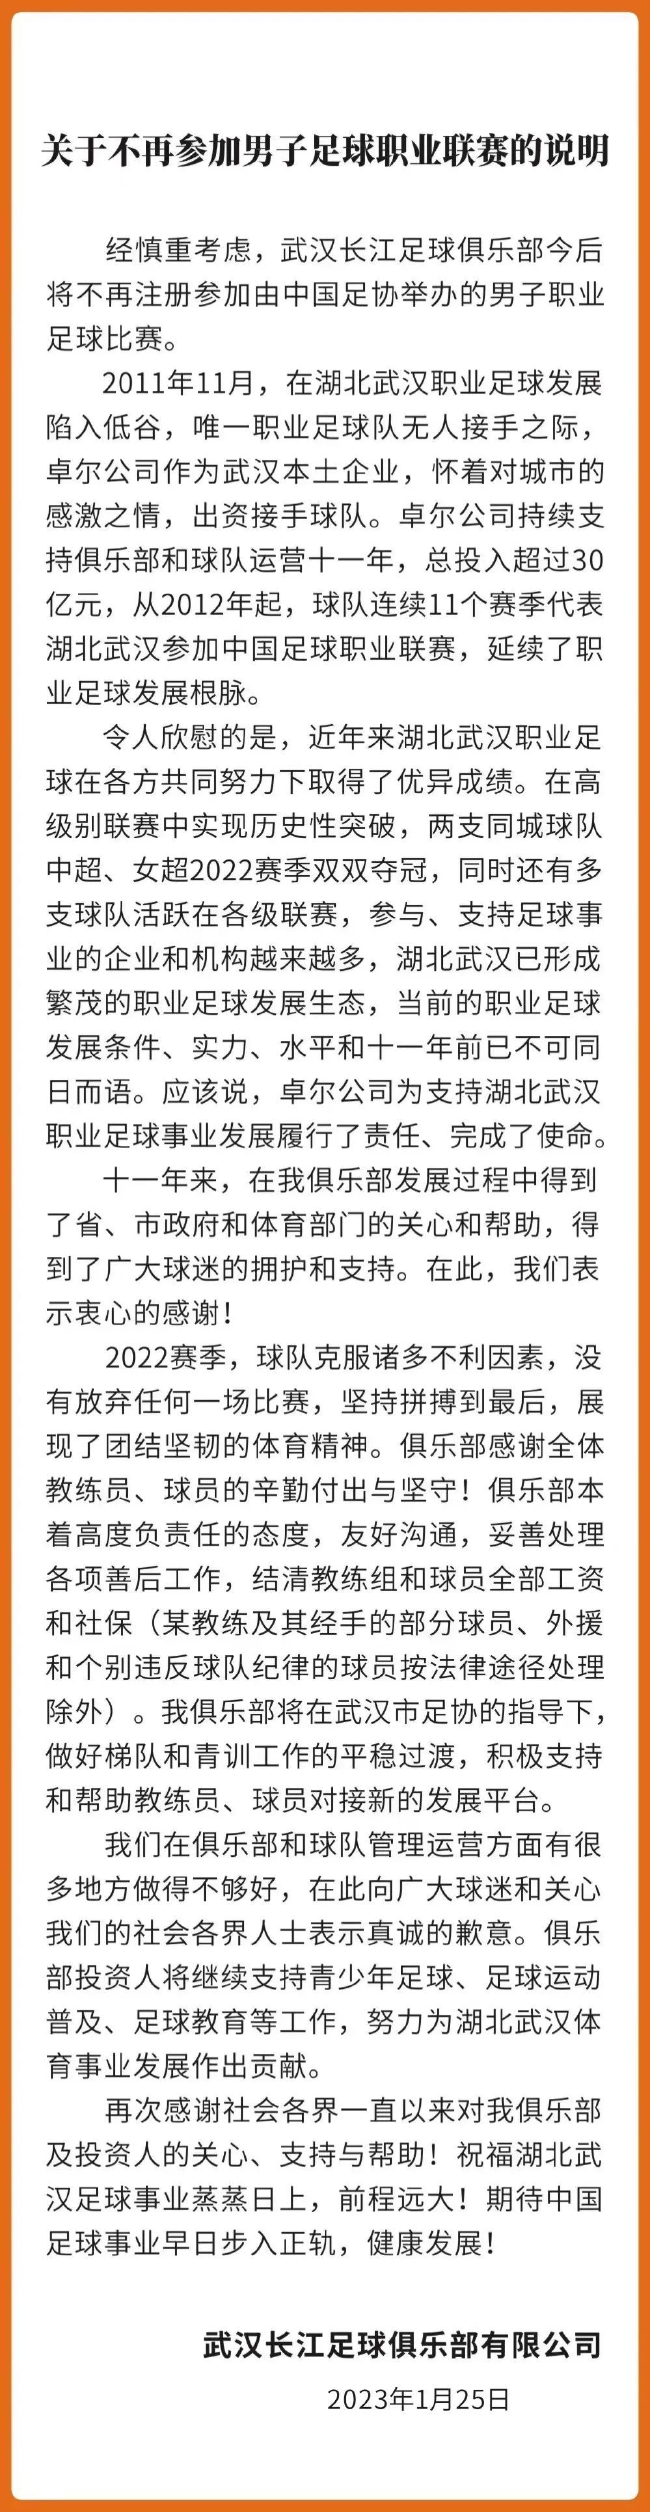 武汉长江足球俱乐部宣布解散